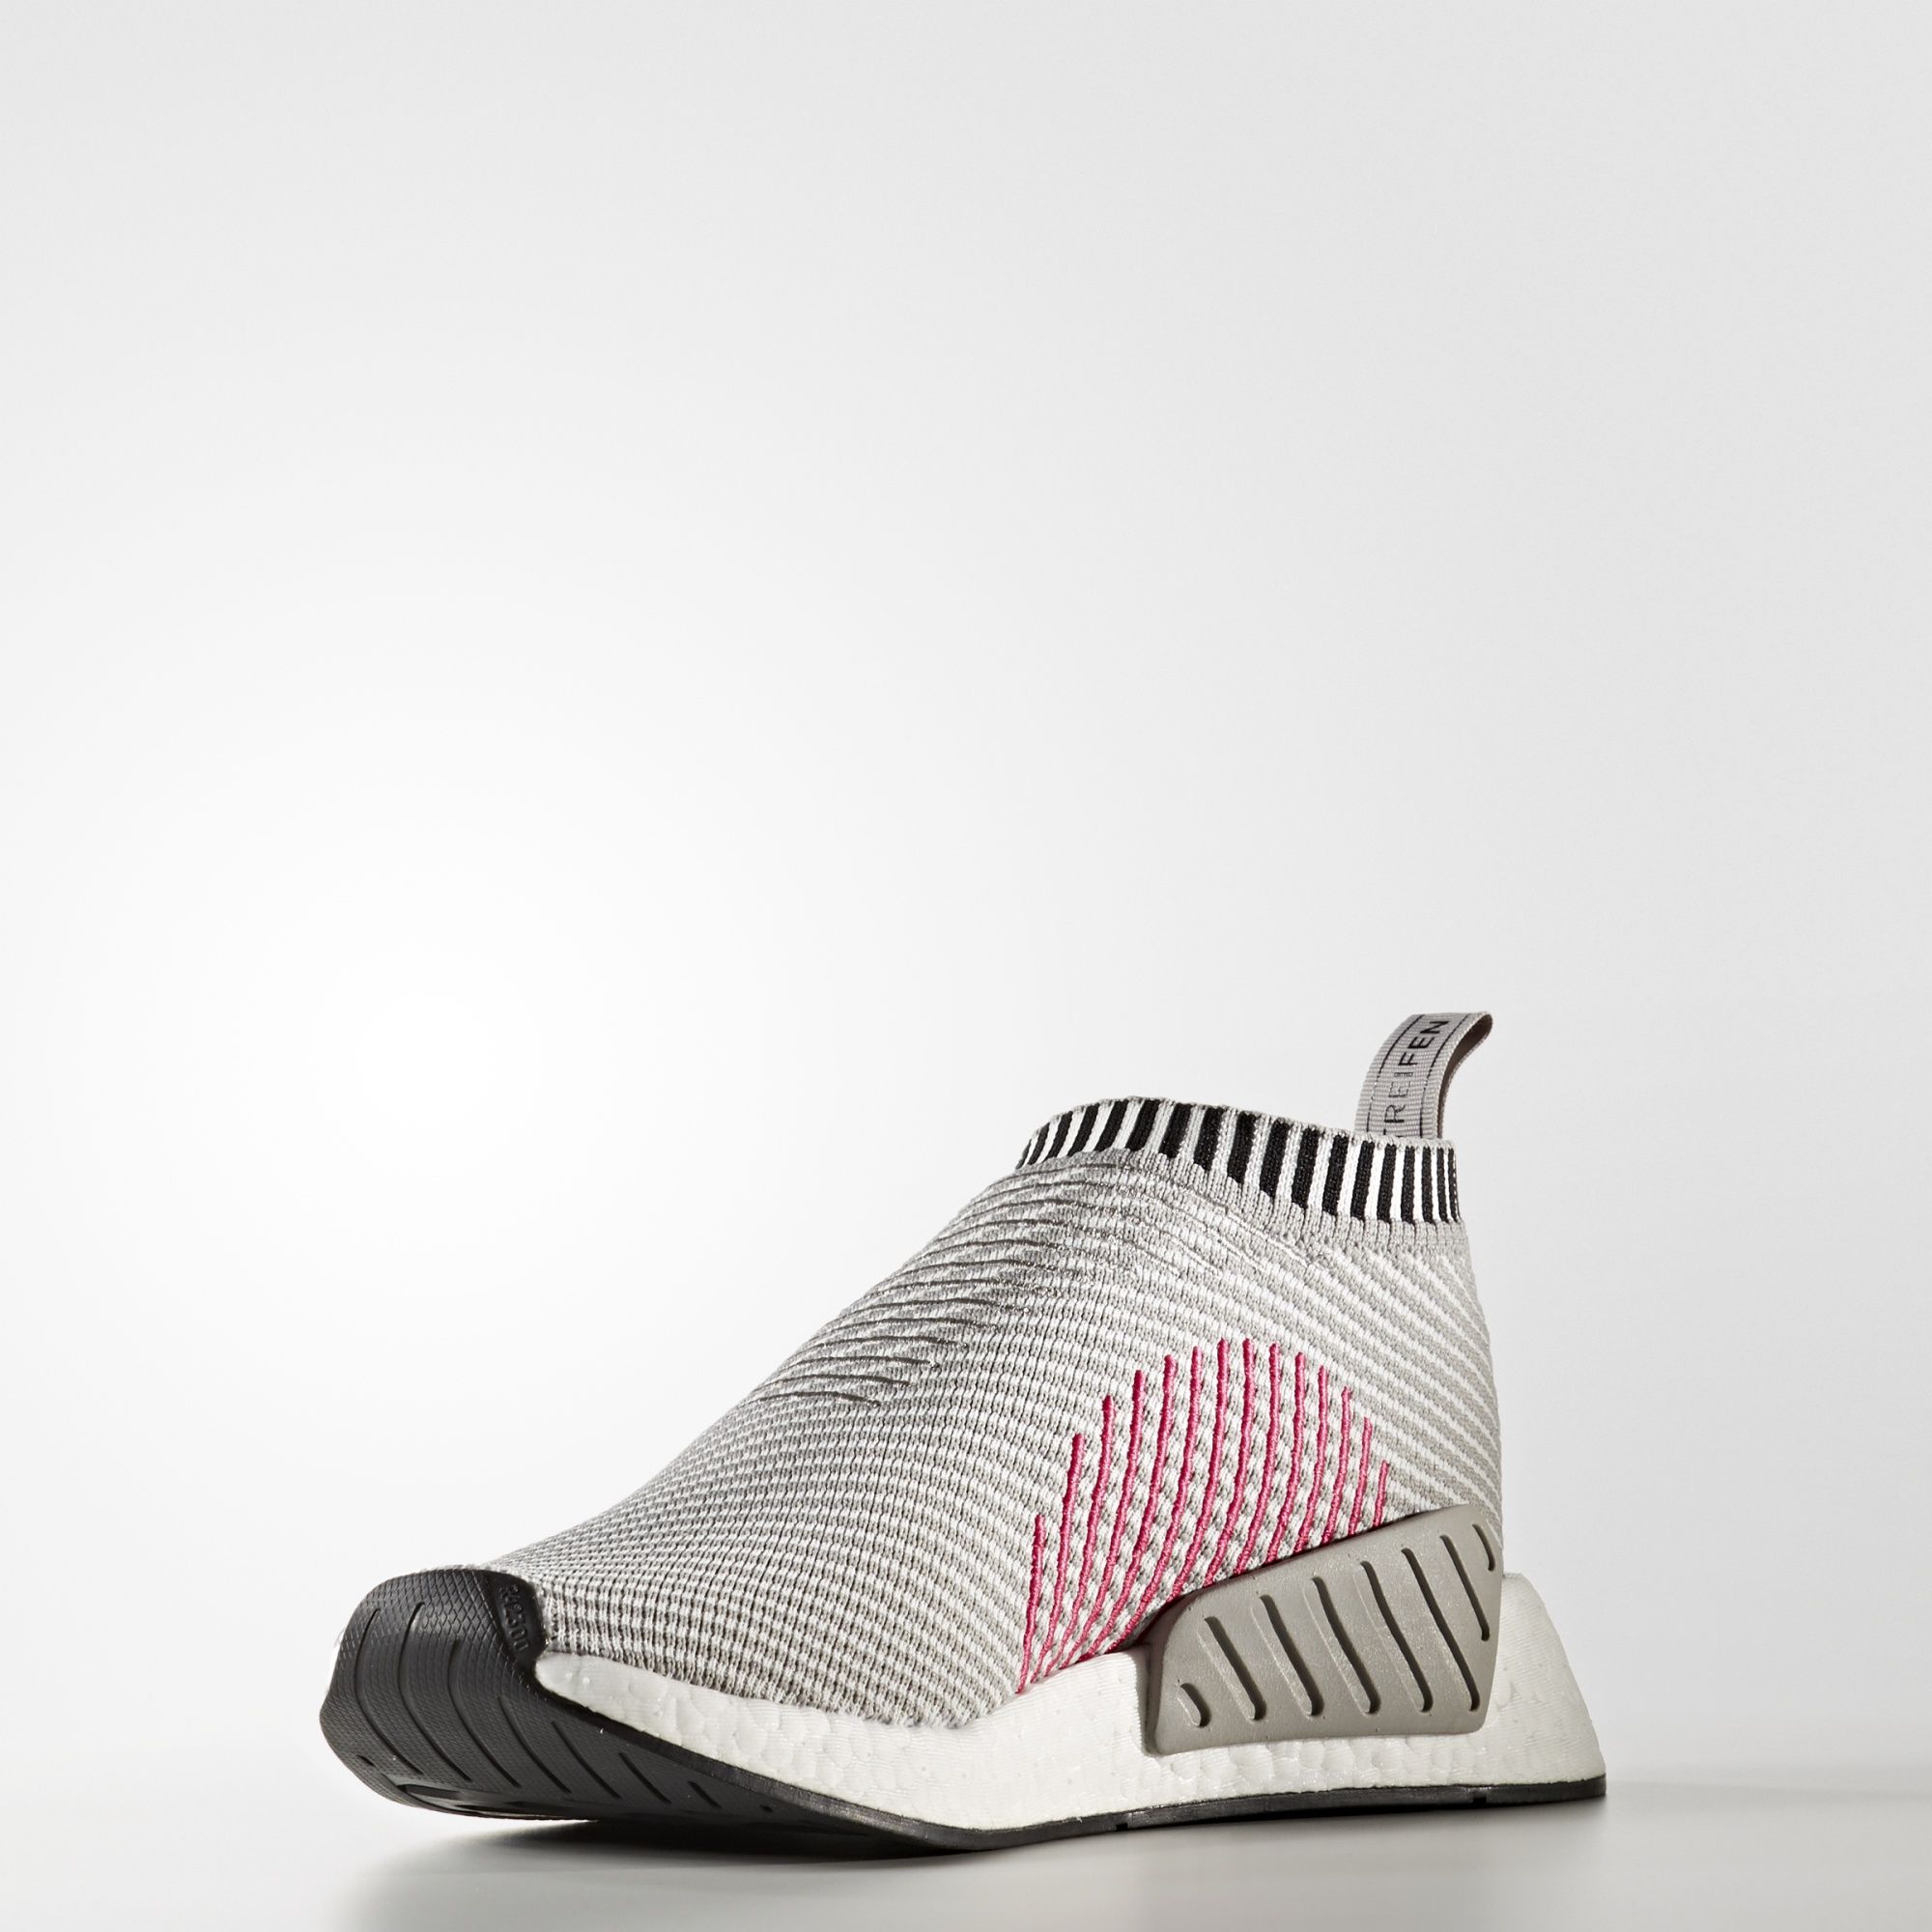 Adidas NMD_CS2 Primeknit
Footwear White / Shock Pink